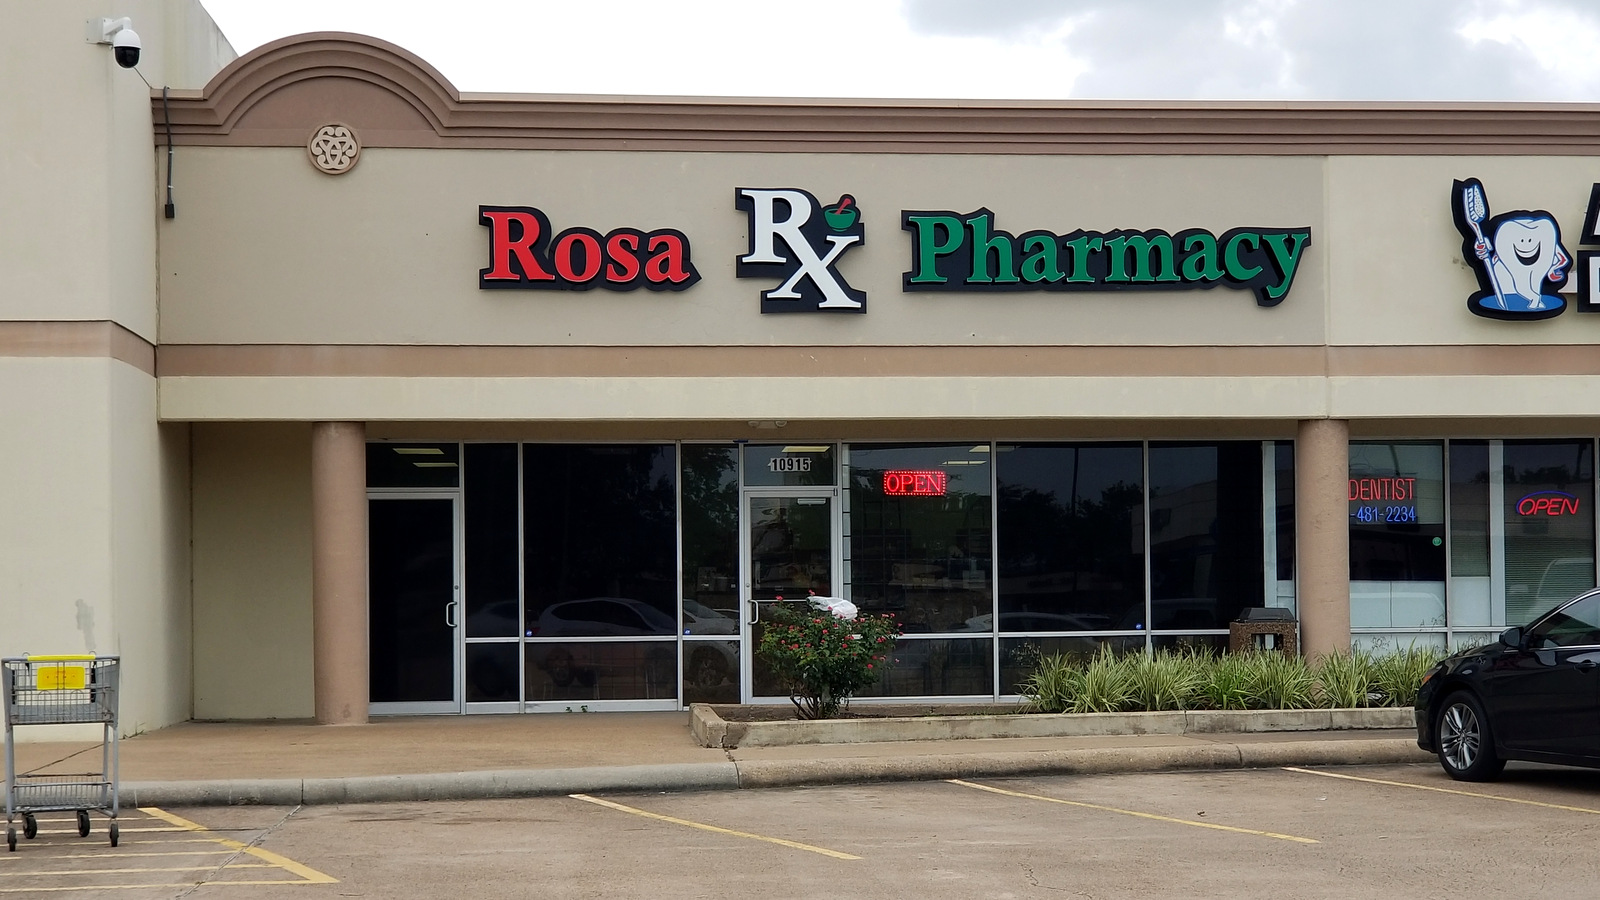 Rosa RX Pharmacy